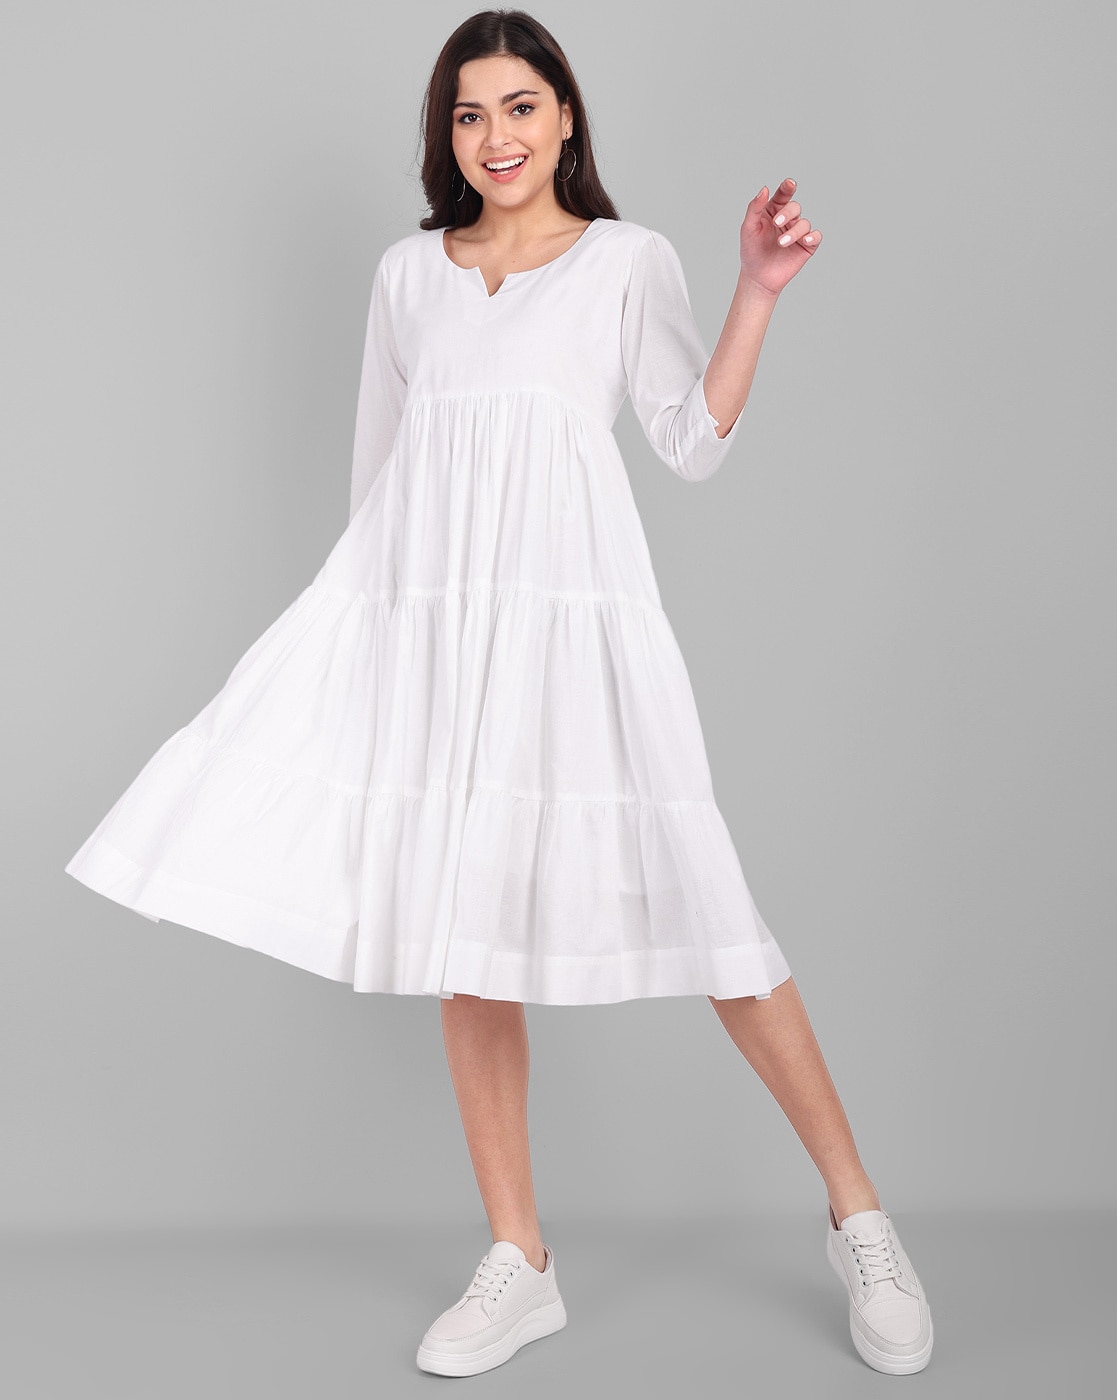 White Chickenkari Gown For Women - Evilato-hangkhonggiare.com.vn